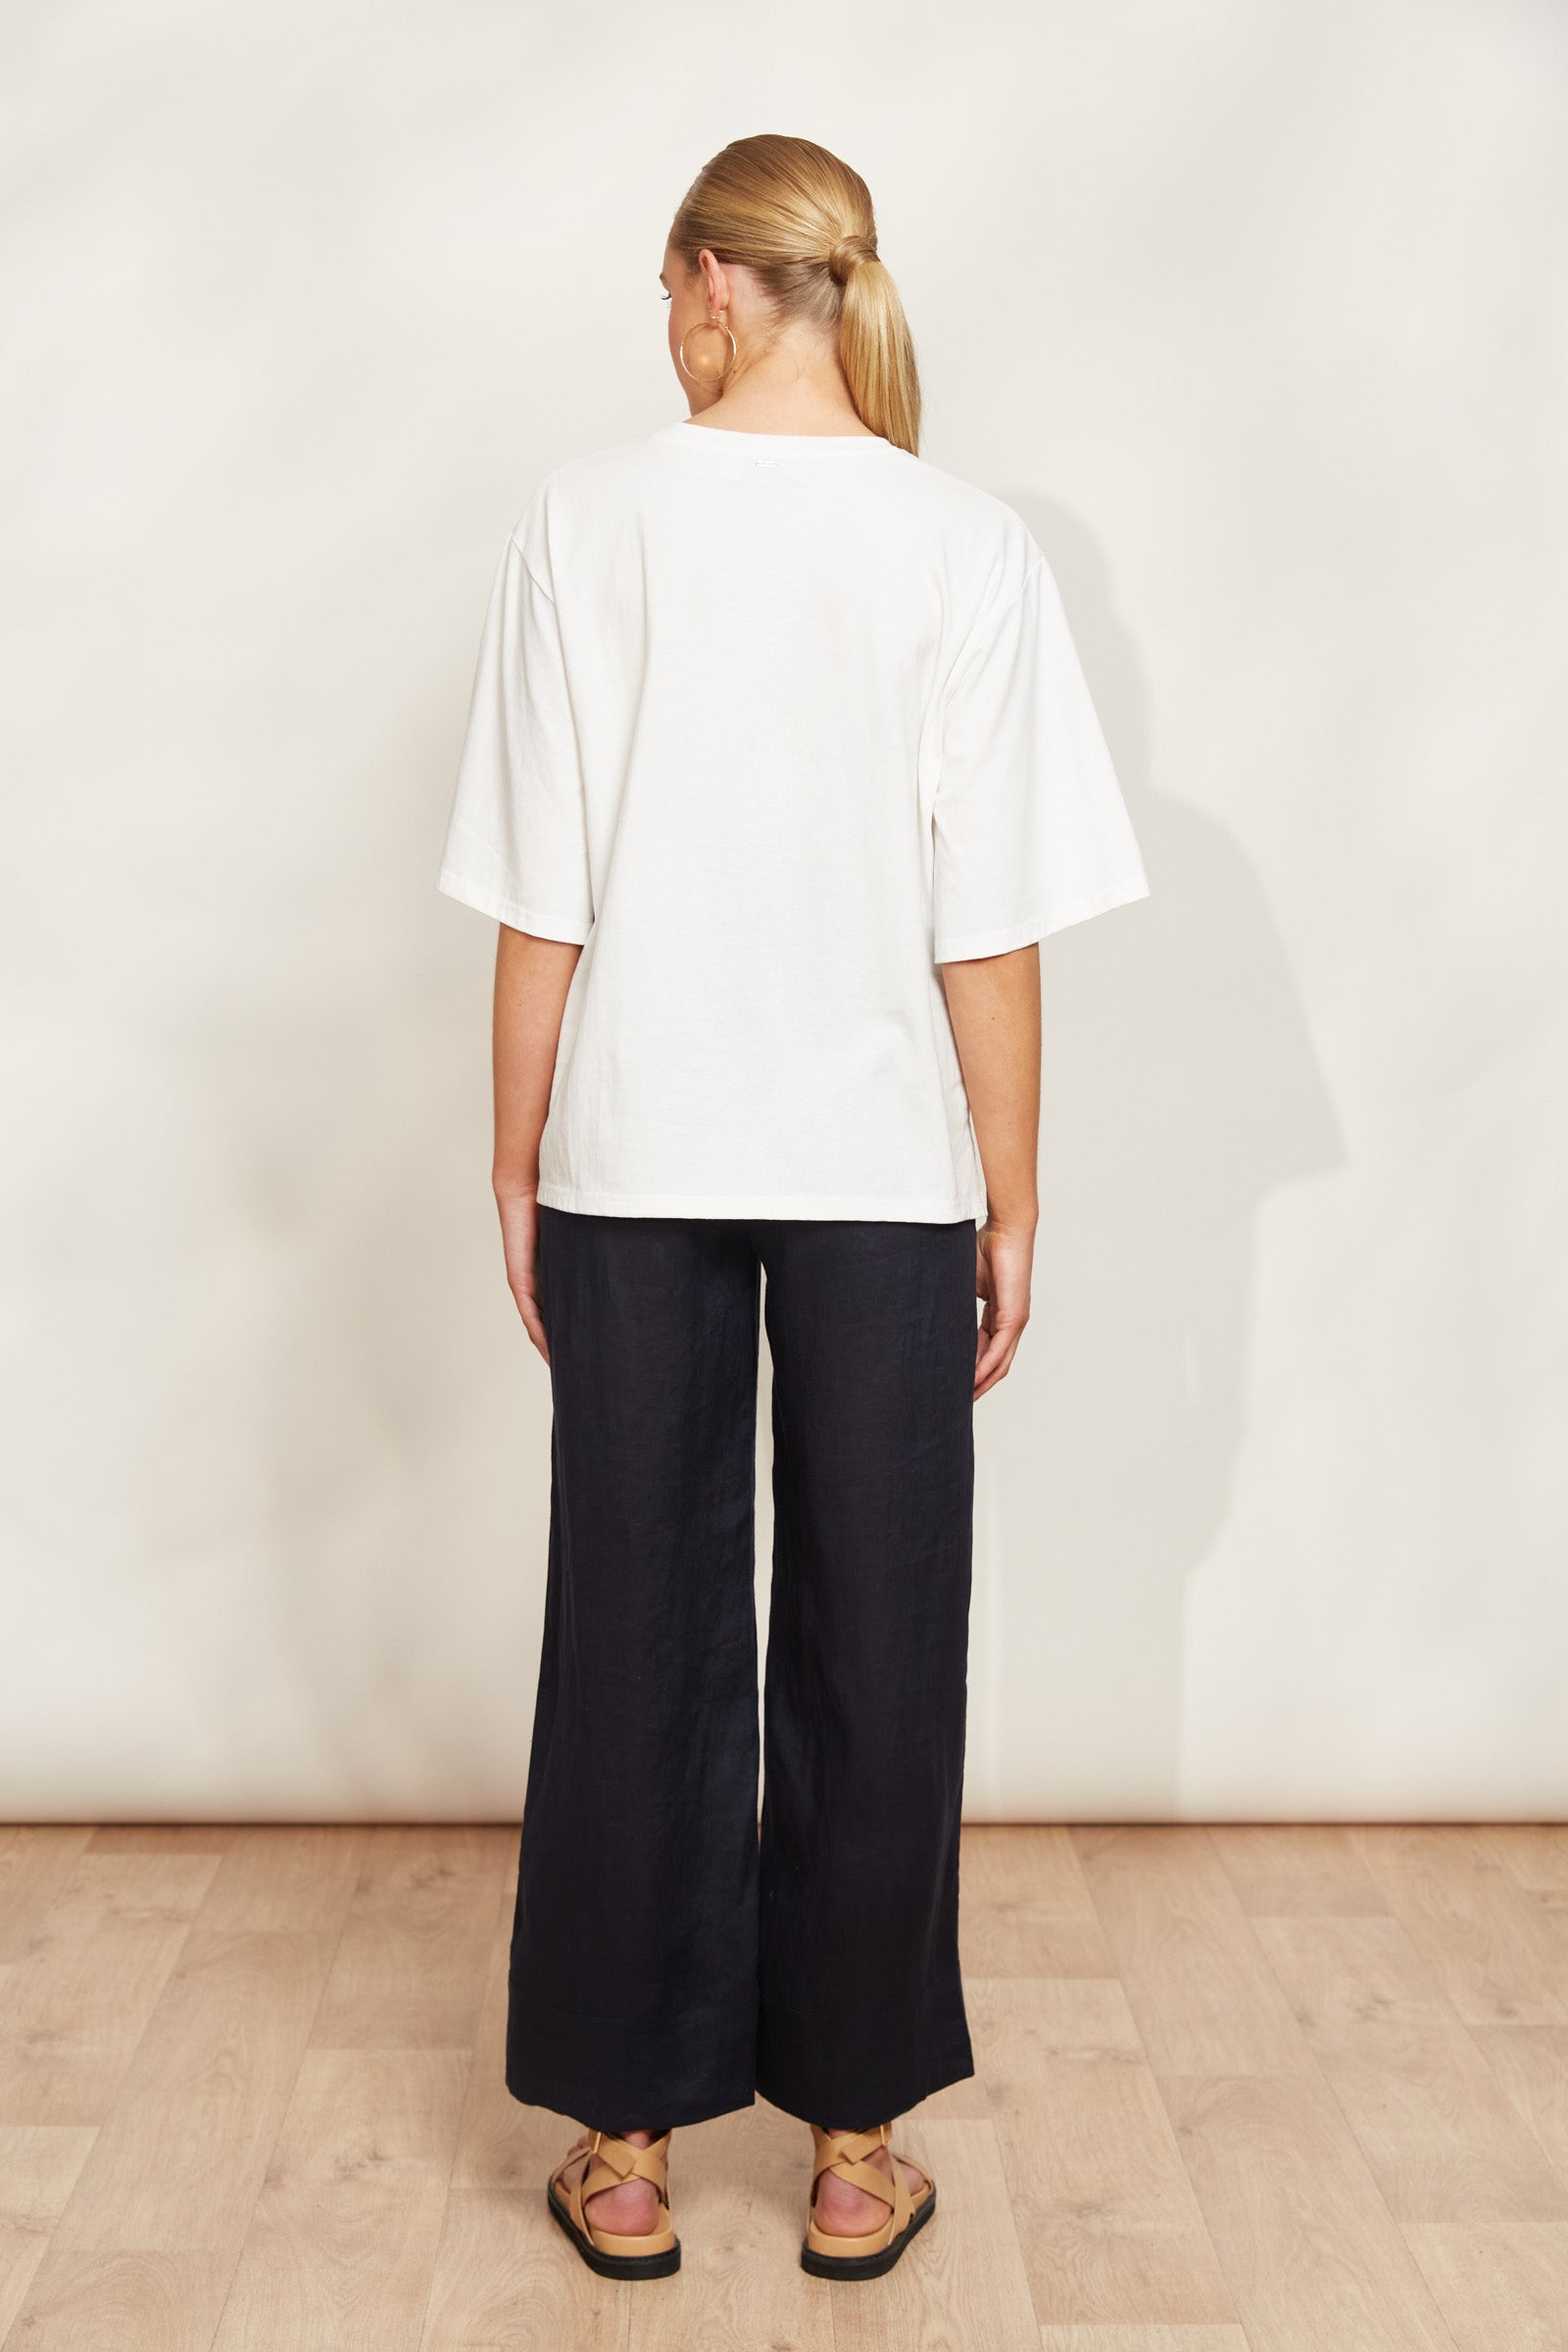 Studio Tshirt - Salt - eb&ive Clothing - Top Tshirt S/S